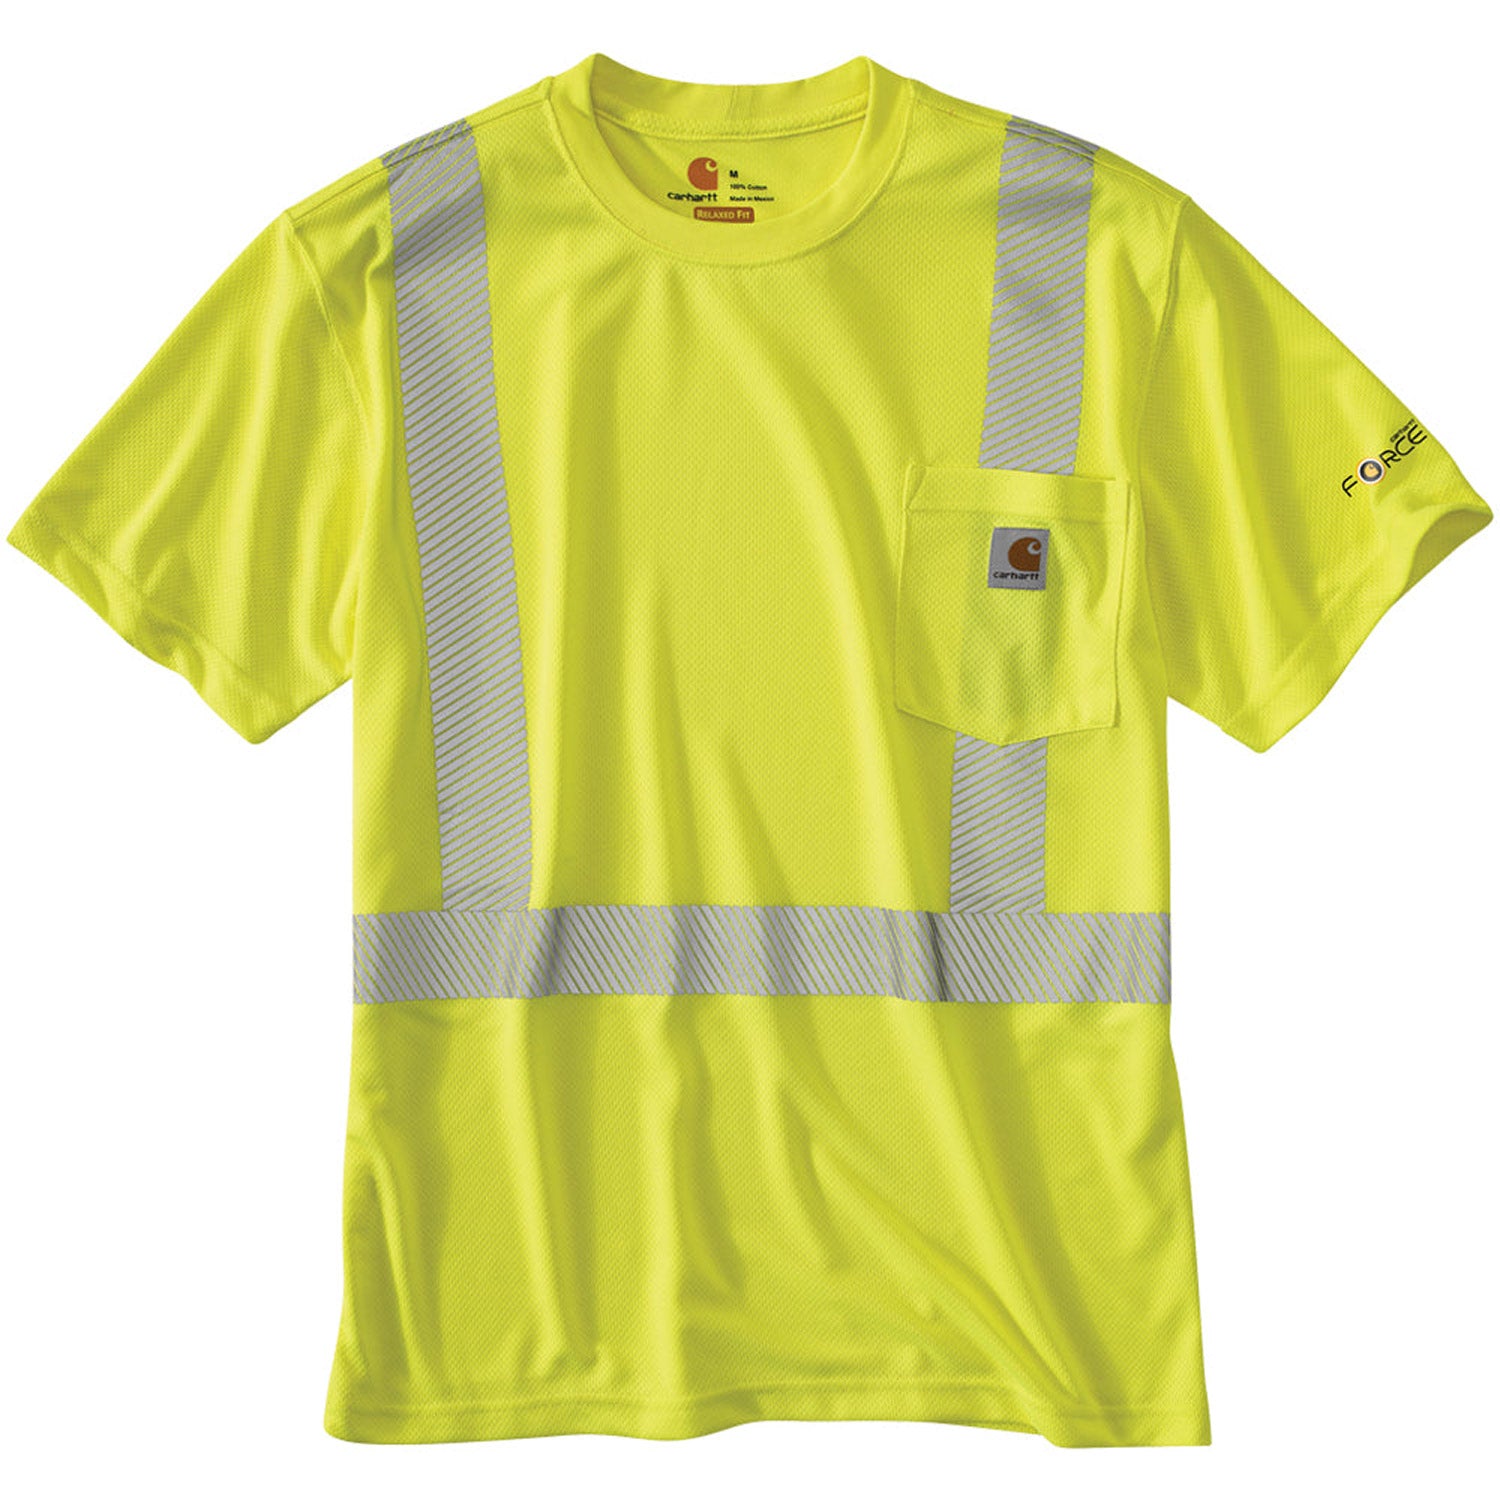 Carhartt Men's Force® High Visibility Class 2 Short Sleeve T-Shirt - Work World - Workwear, Work Boots, Safety Gear